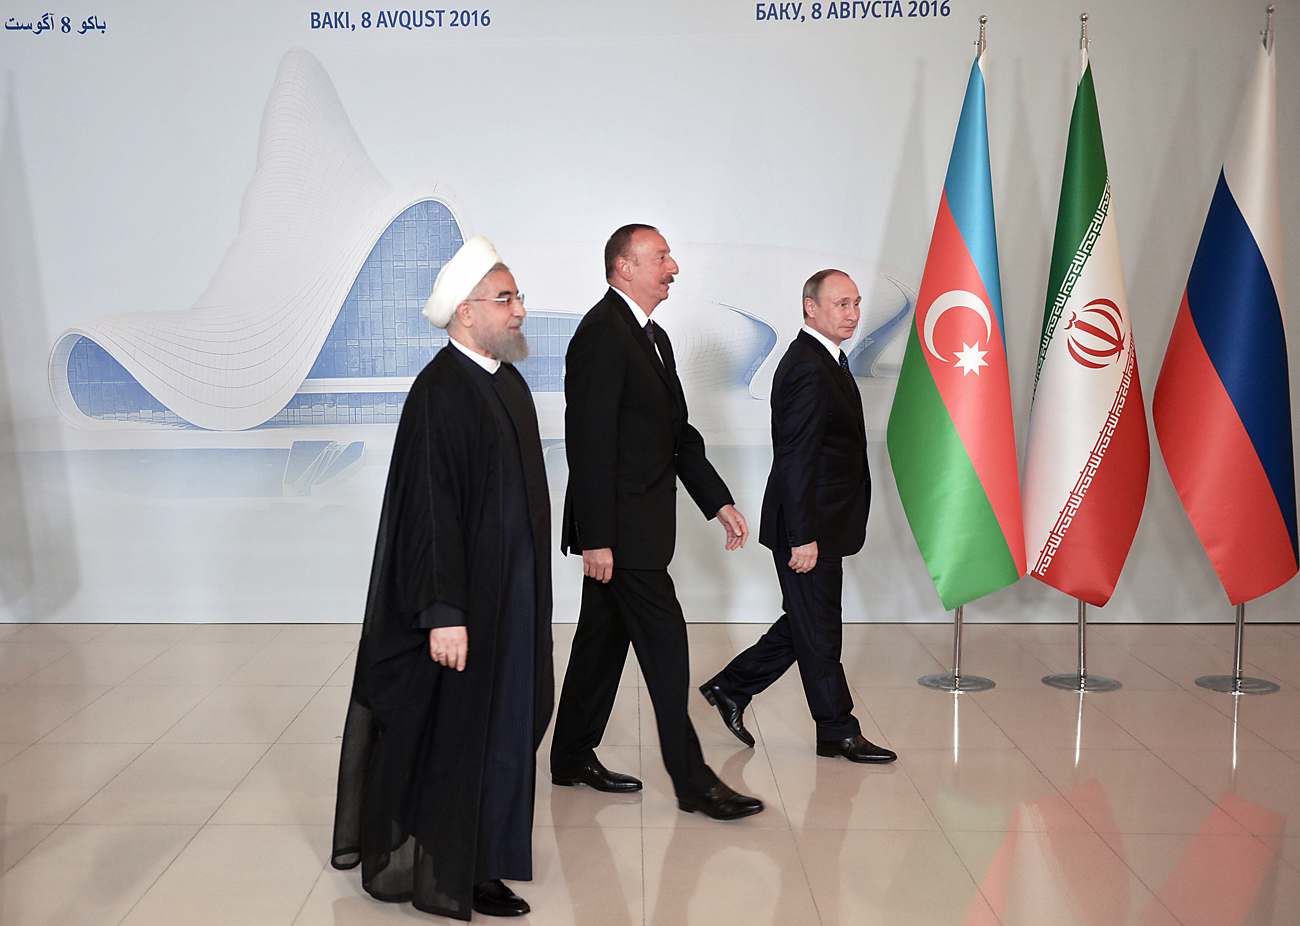 Vladímir Putin, Ilham Alíev y Hasán Rouhaní durante el encuentro en Bakú.